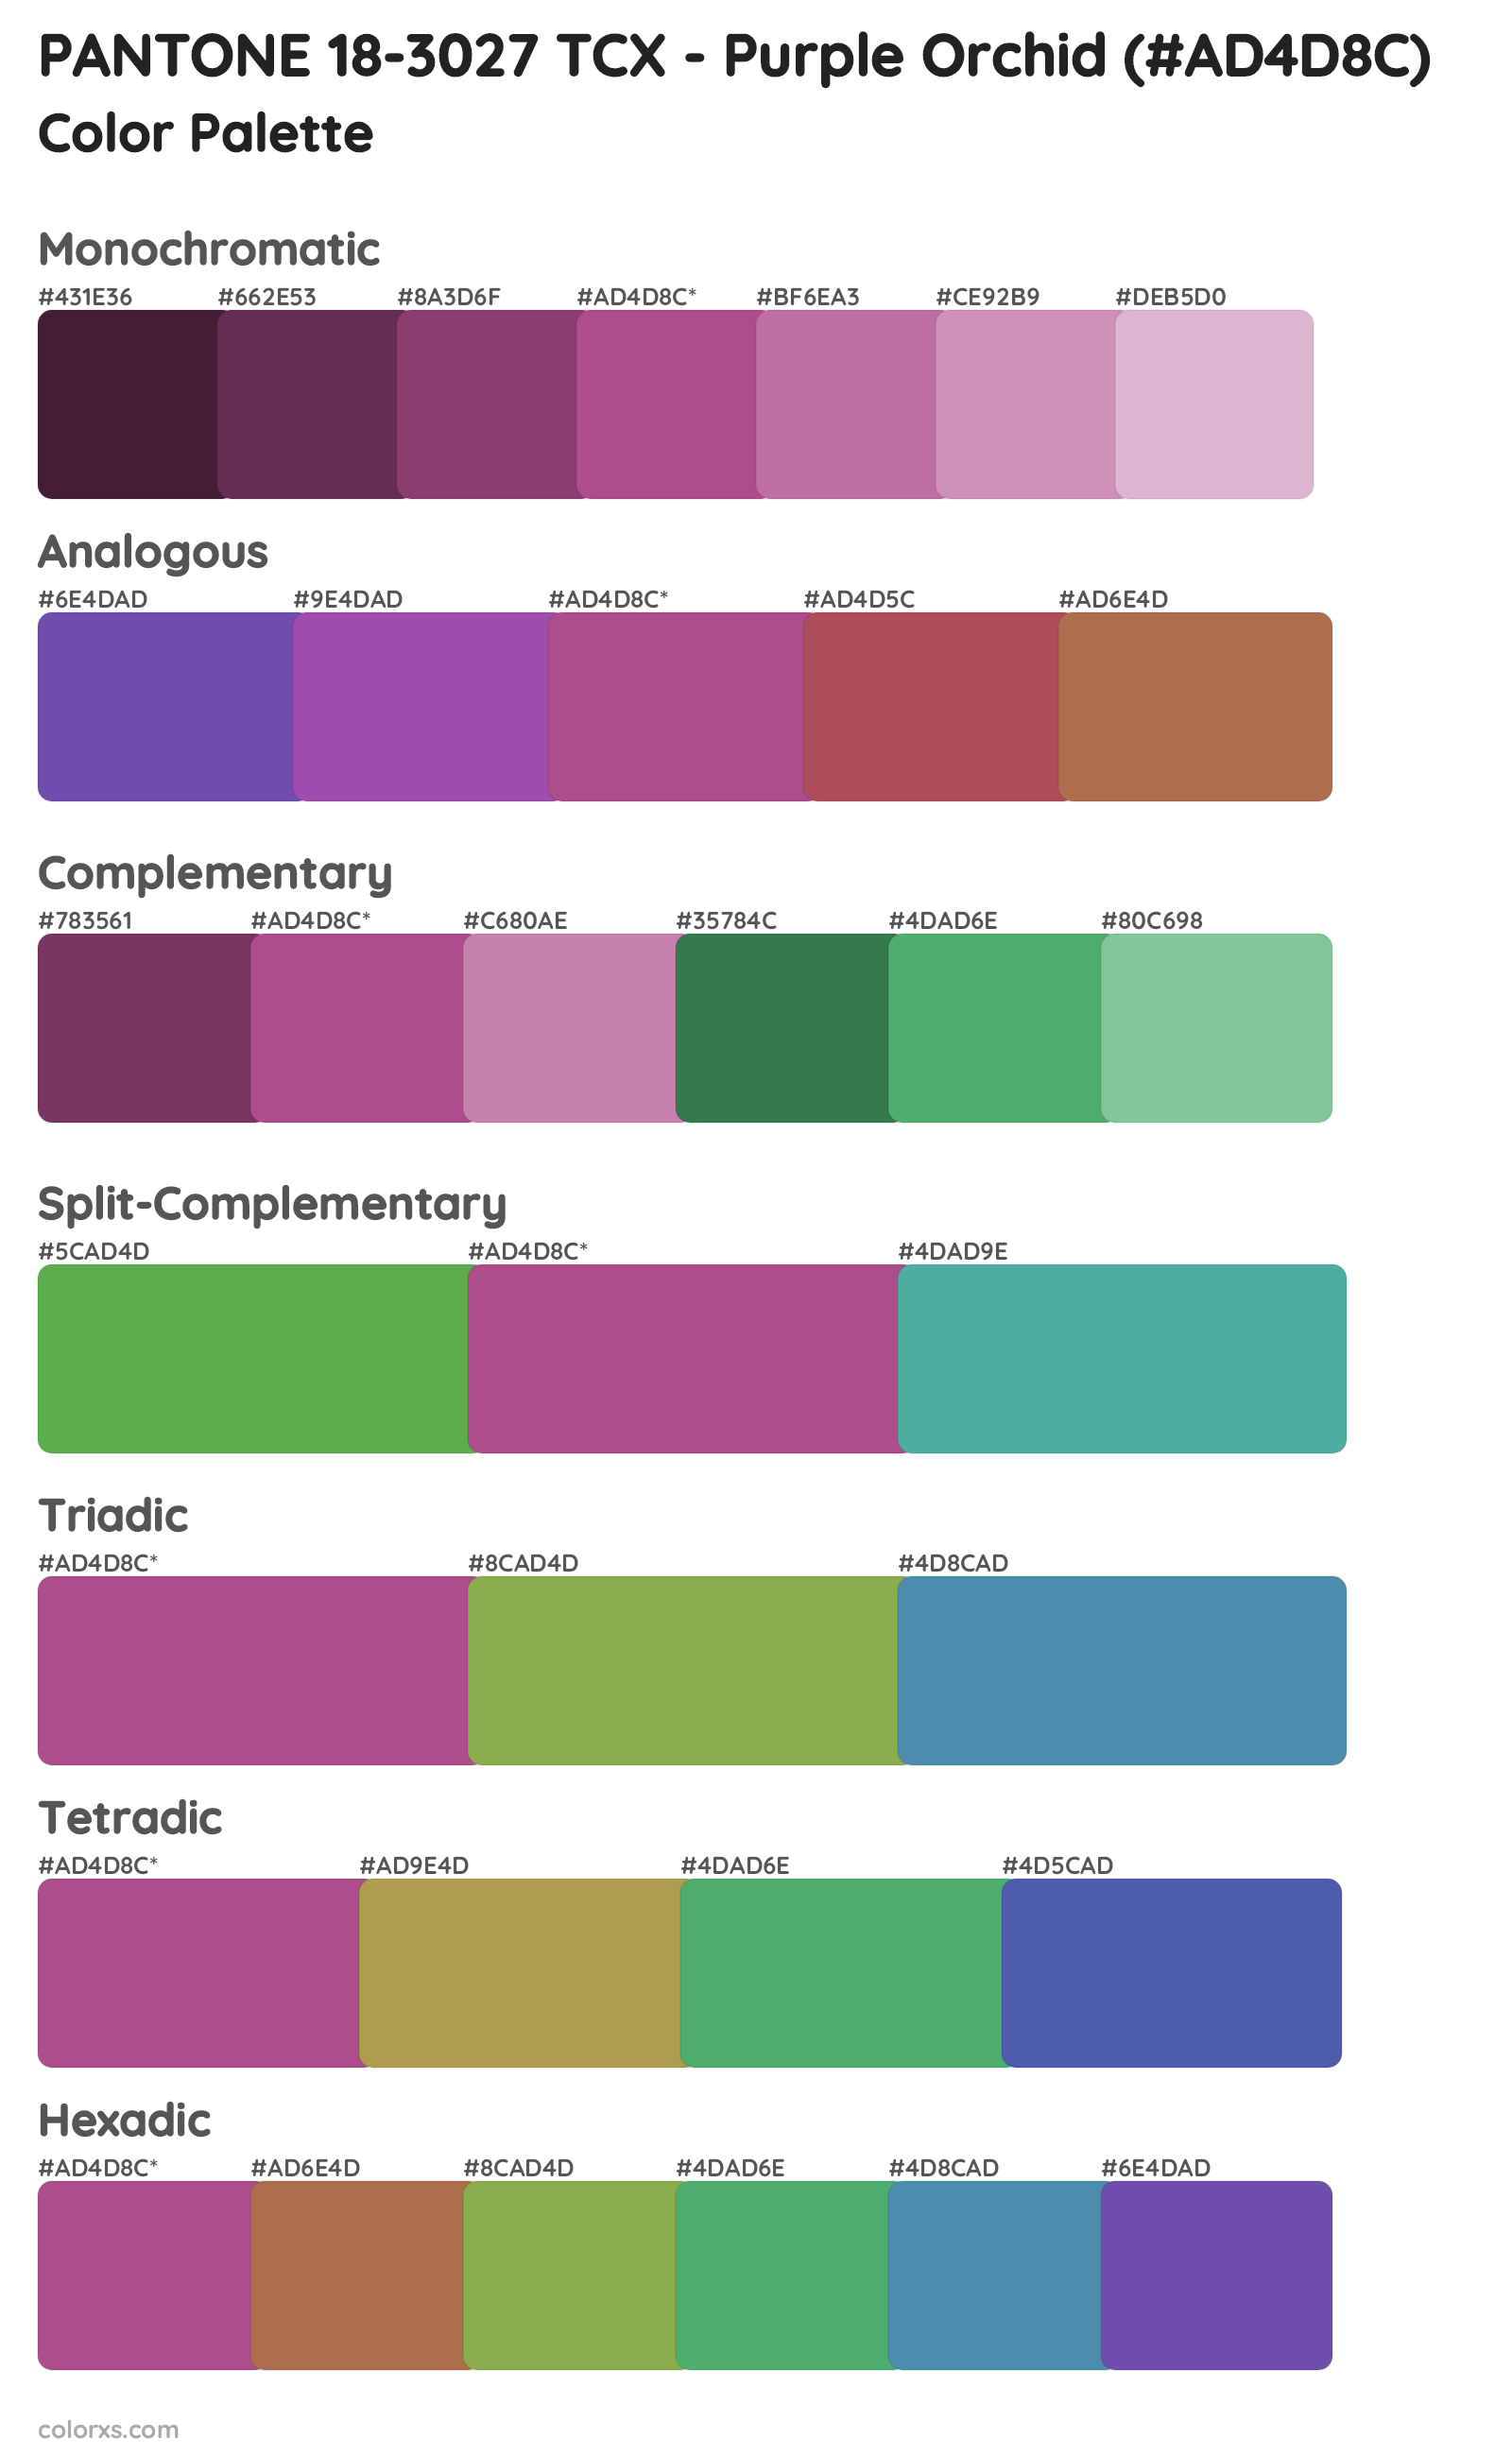 PANTONE 18-3027 TCX - Purple Orchid Color Scheme Palettes